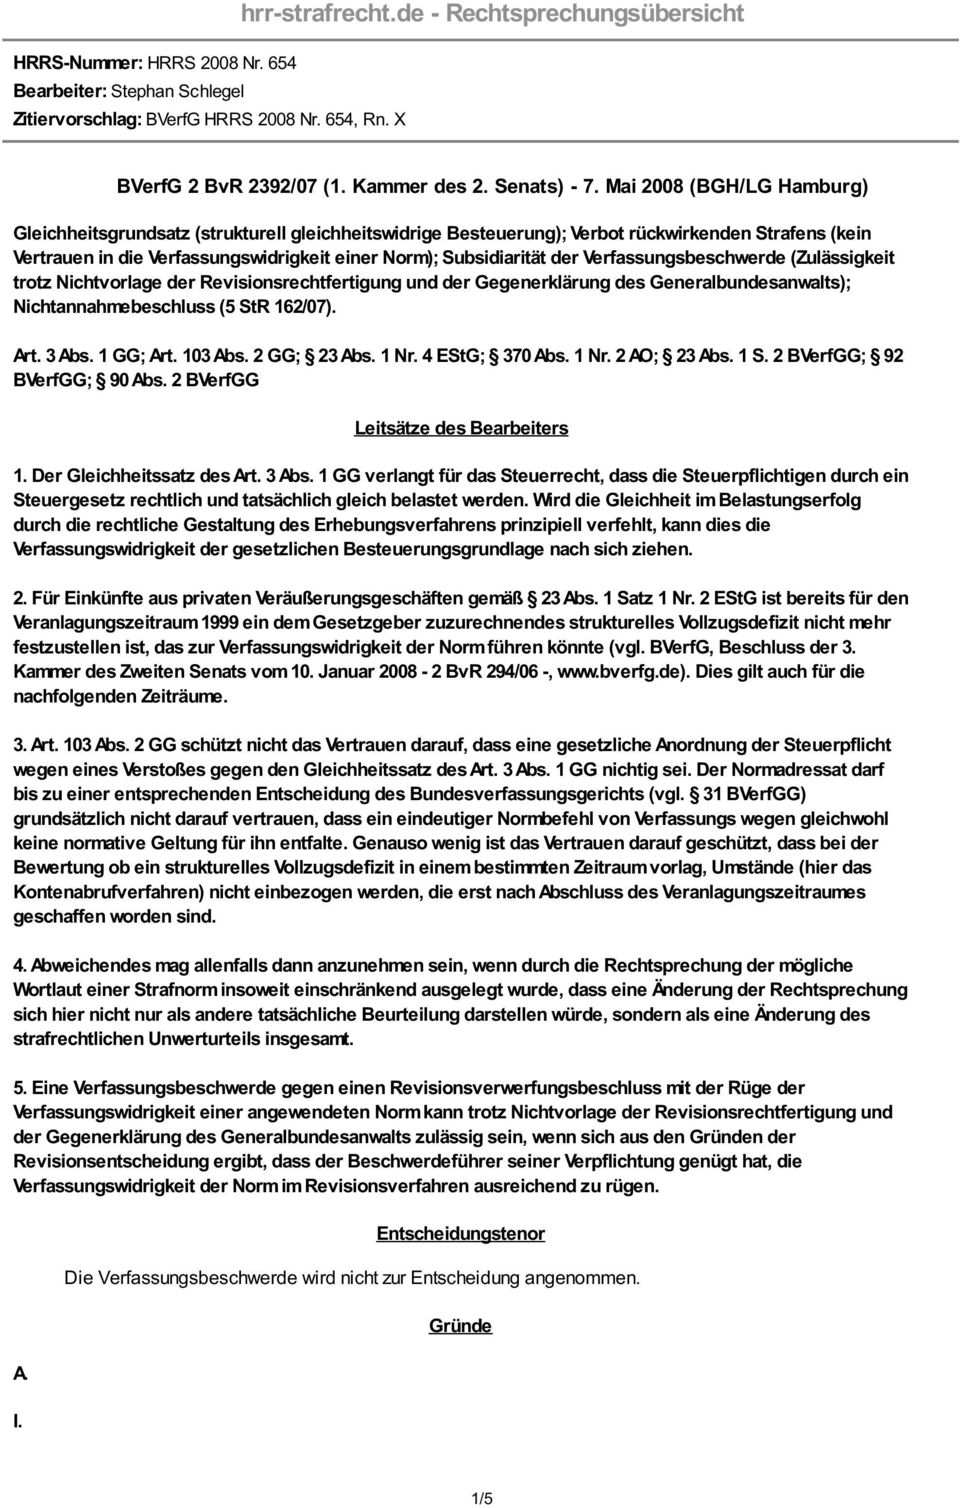 Mai 2008 (BGH/LG Hamburg) Gleichheitsgrundsatz (strukturell gleichheitswidrige Besteuerung); Verbot rückwirkenden Strafens (kein Vertrauen in die Verfassungswidrigkeit einer Norm); Subsidiarität der